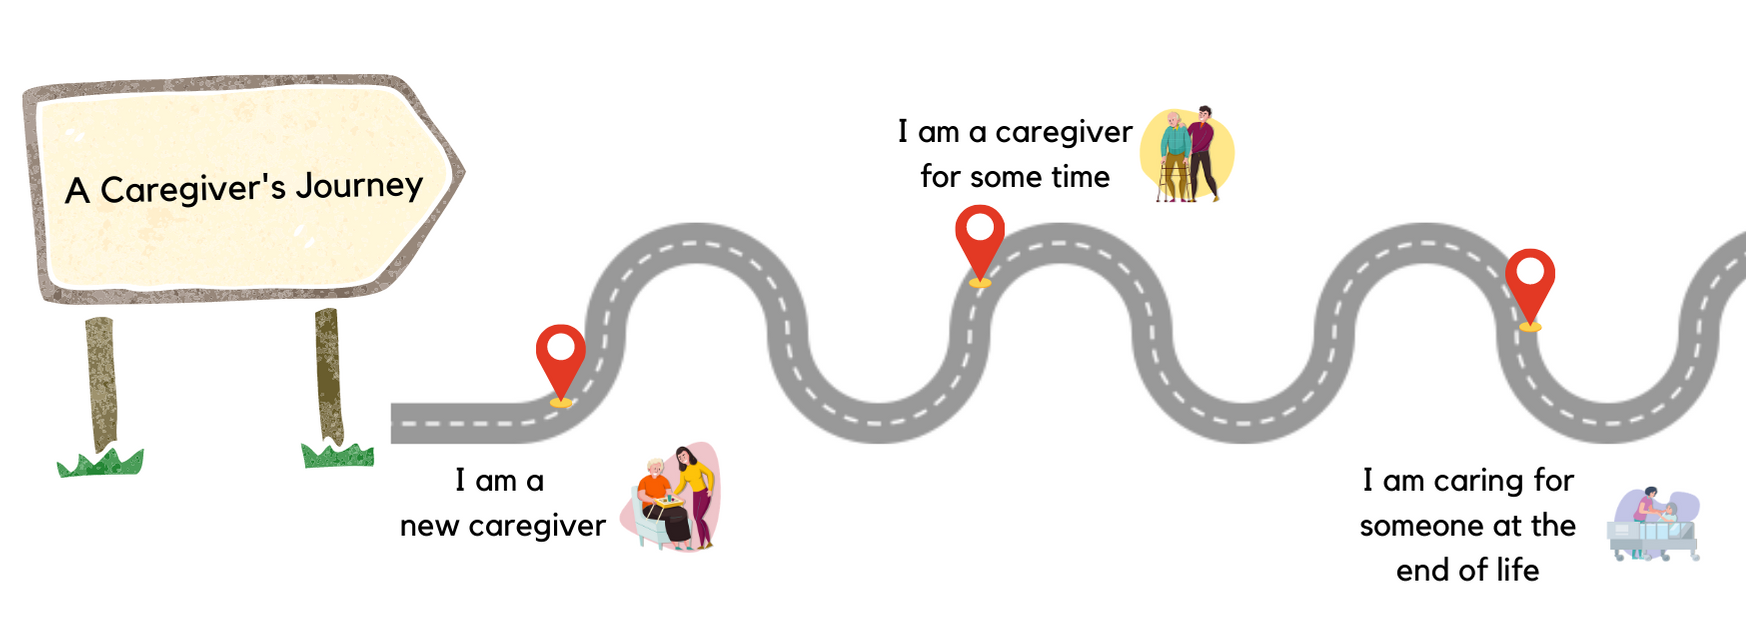 Caregiver's Journey Road.png